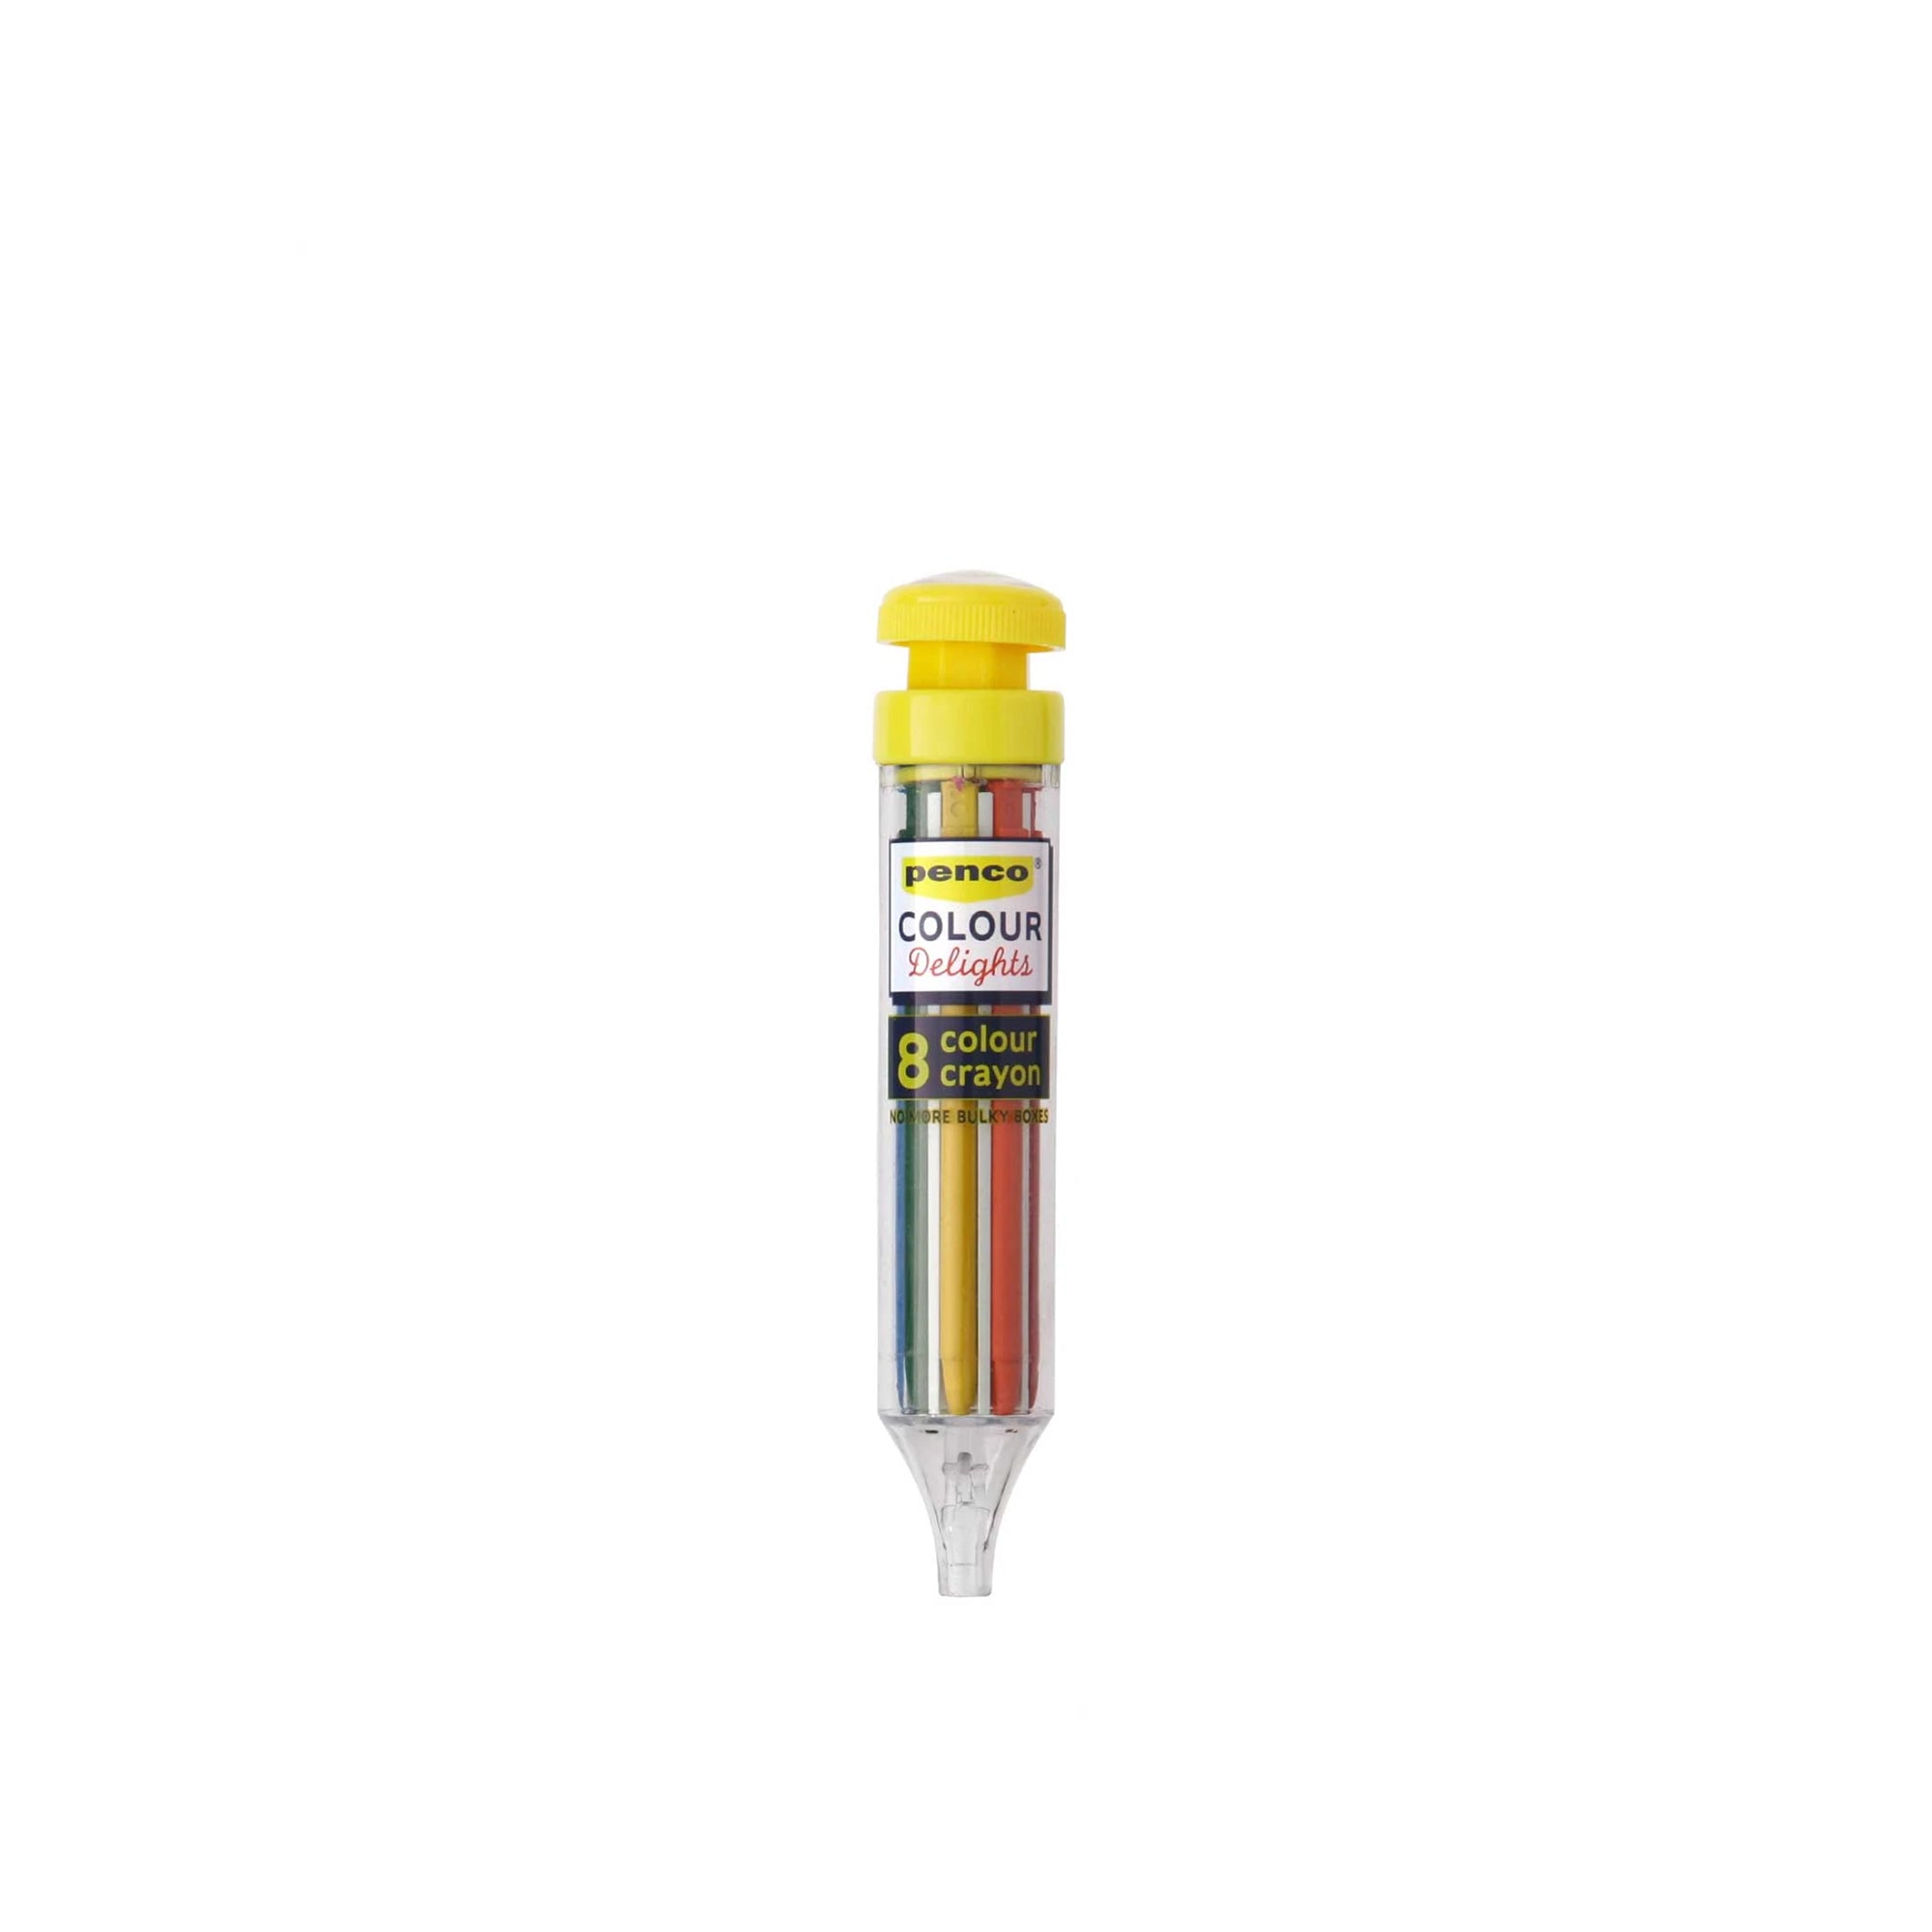 8-Color Crayon Tool